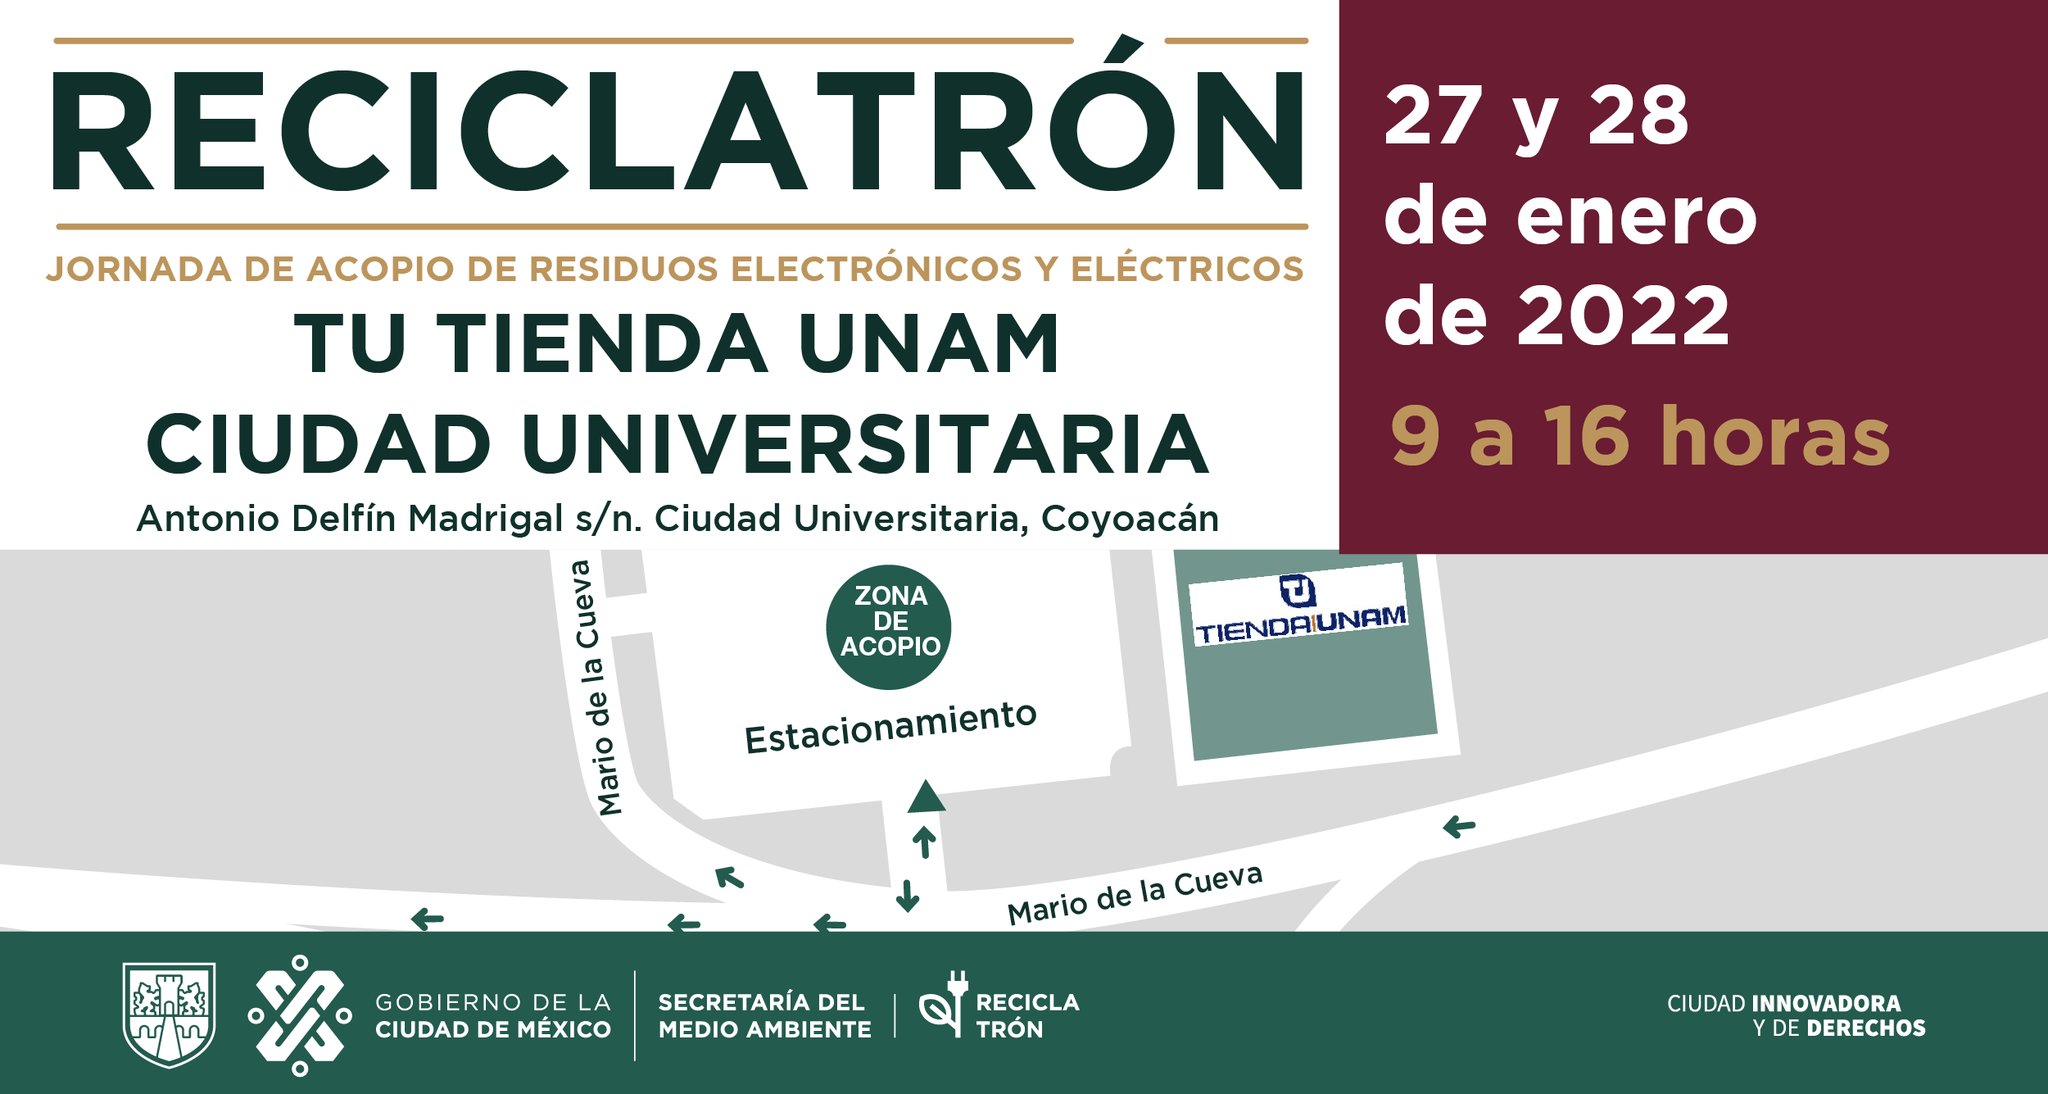 La primera sede del Reciclatrón será en la Tienda UNAM, Ciudad Universitaria (Foto: Sedema)